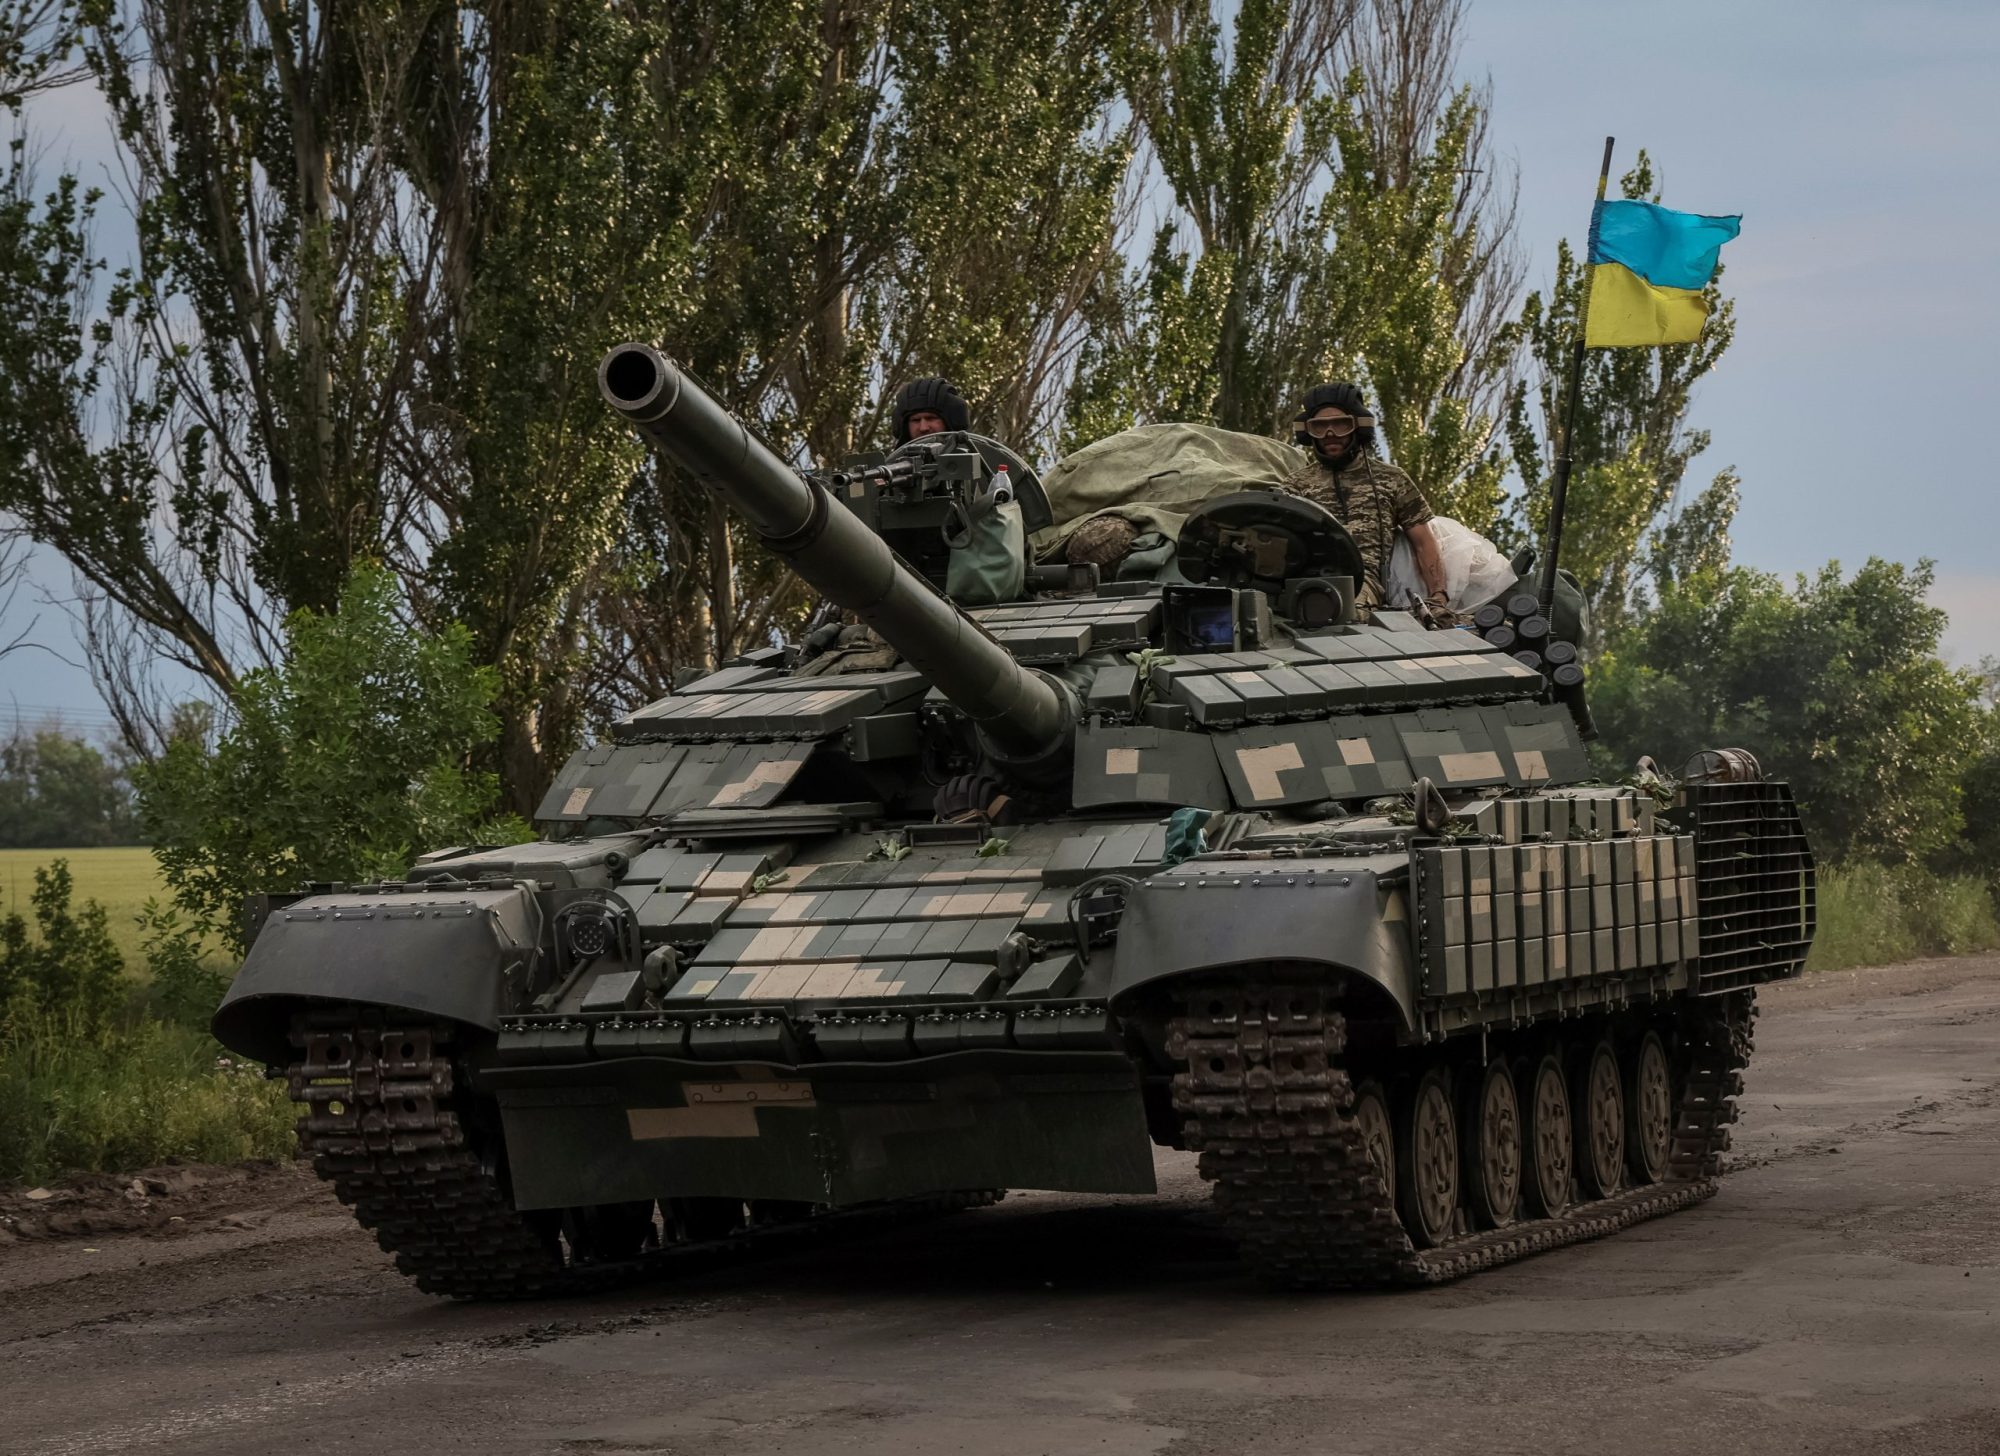 Να τελειώσει ο πόλεμος με οποιοδήποτε κόστος θέλει ένας στους τρεις Ουκρανούς